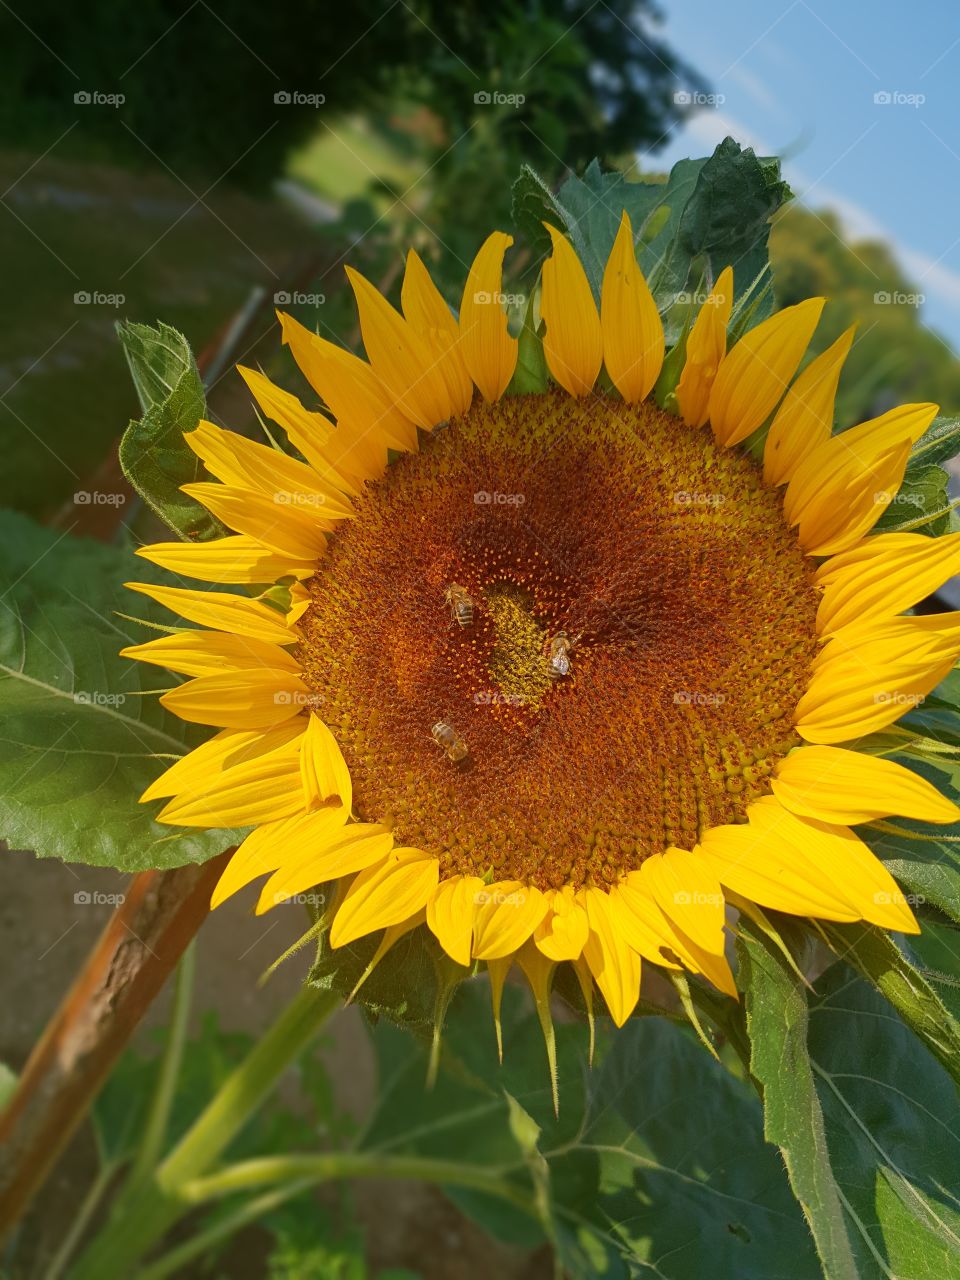 sunflower in my garden